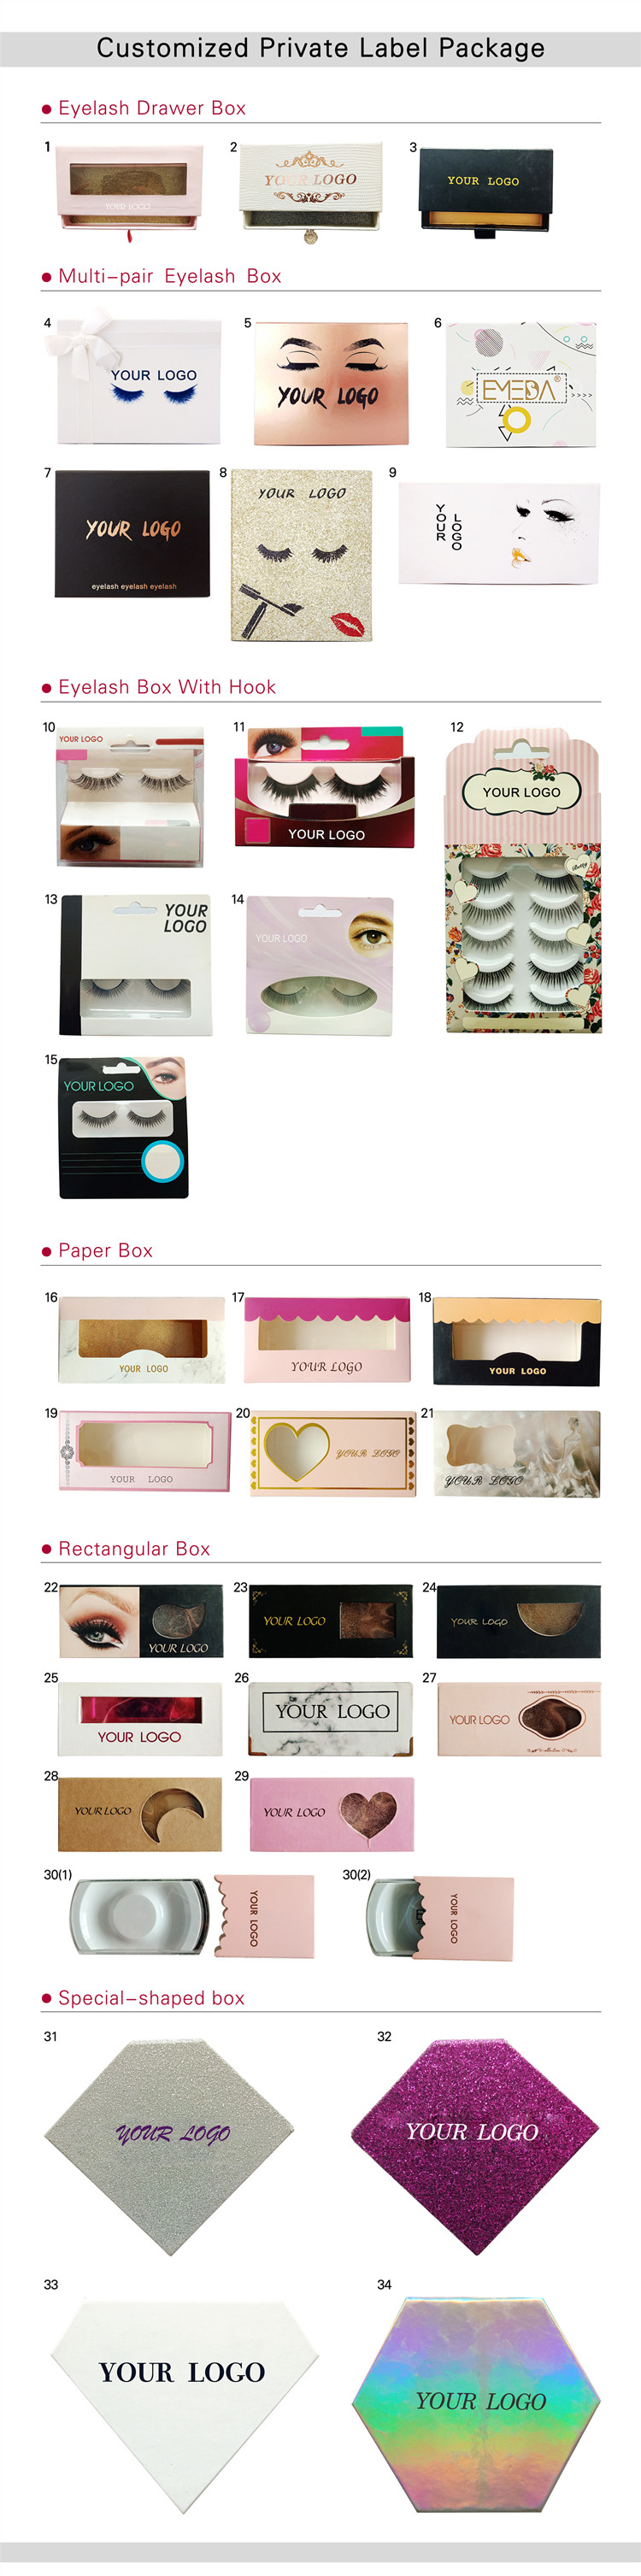 eyelash-boxes.jpg